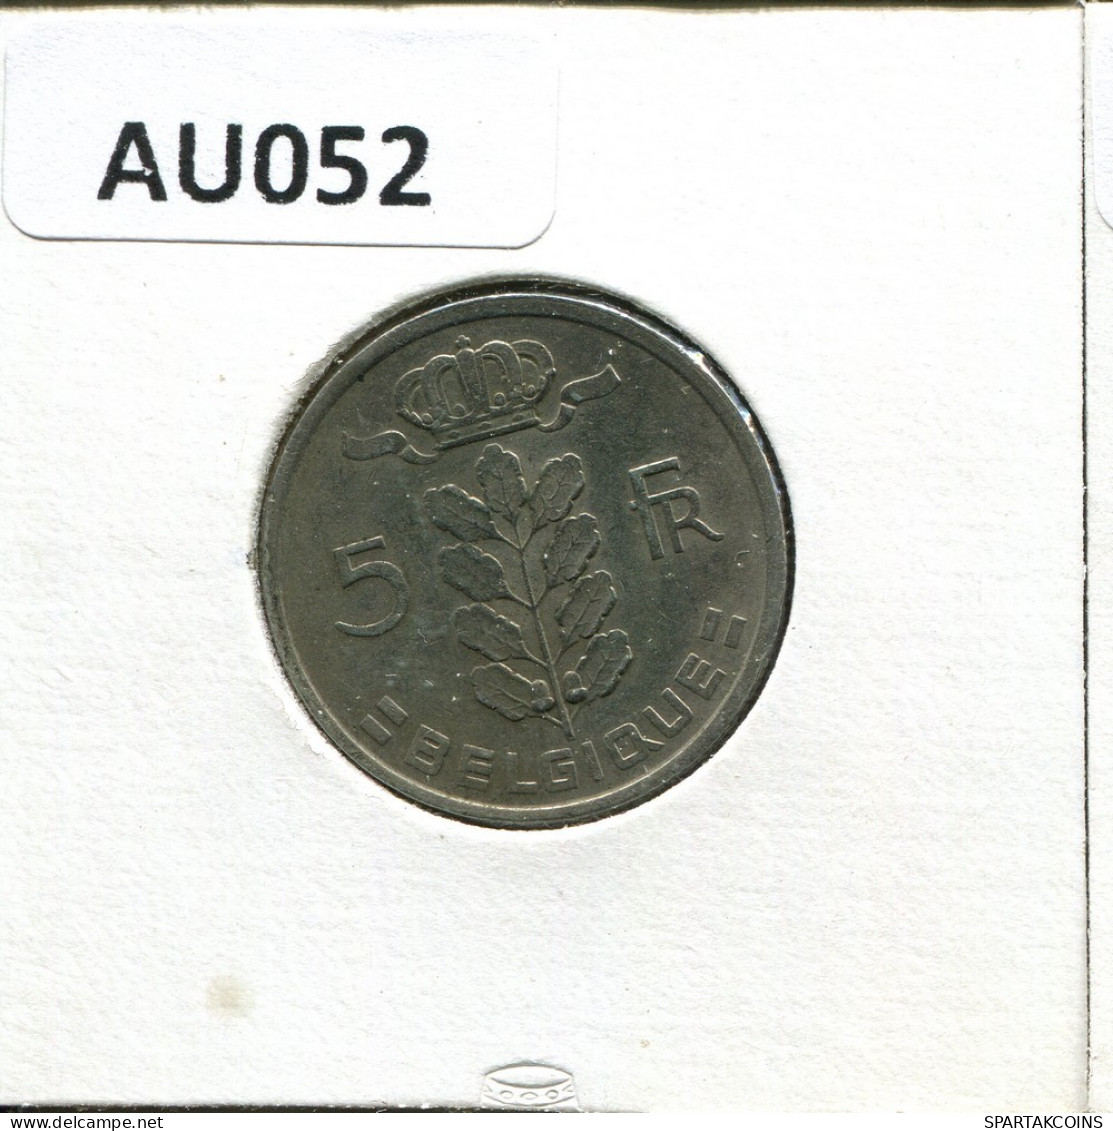 5 FRANCS 1975 FRENCH Text BÉLGICA BELGIUM Moneda #AU052.E.A - 5 Francs